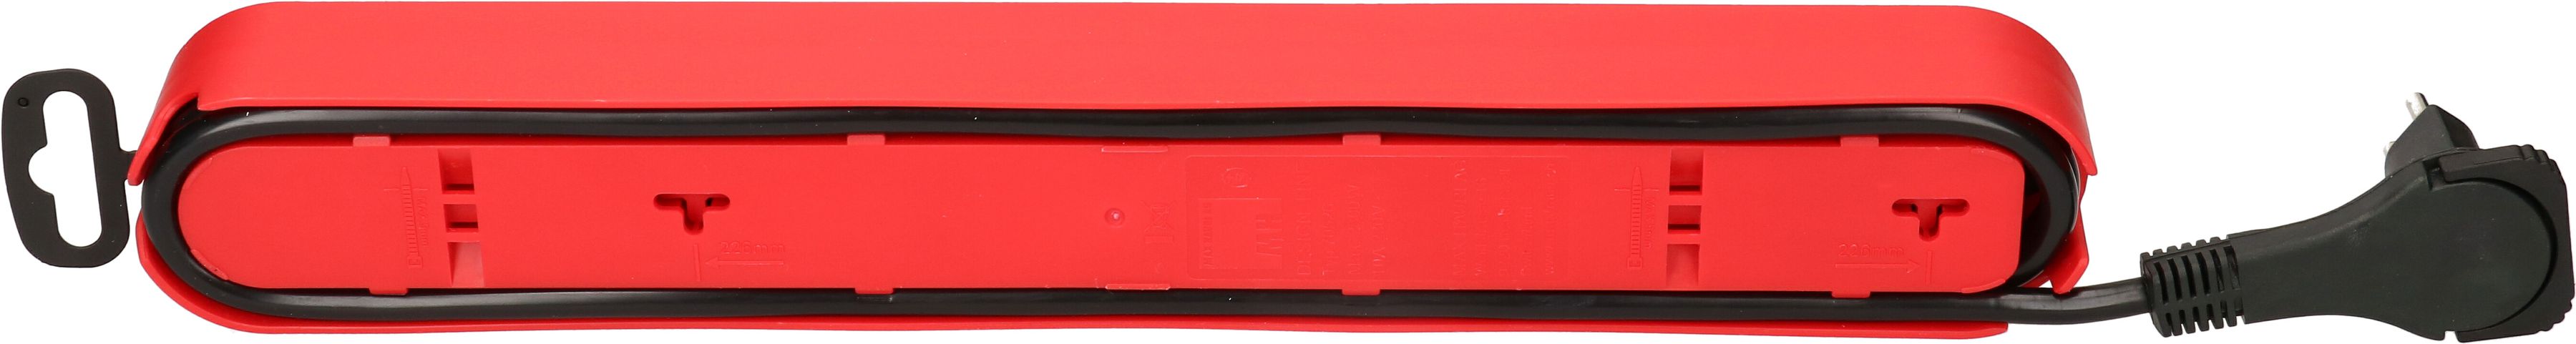 Steckdosenleiste Design Line 6x Typ 13 rot/sw Schalter 2.2m flach